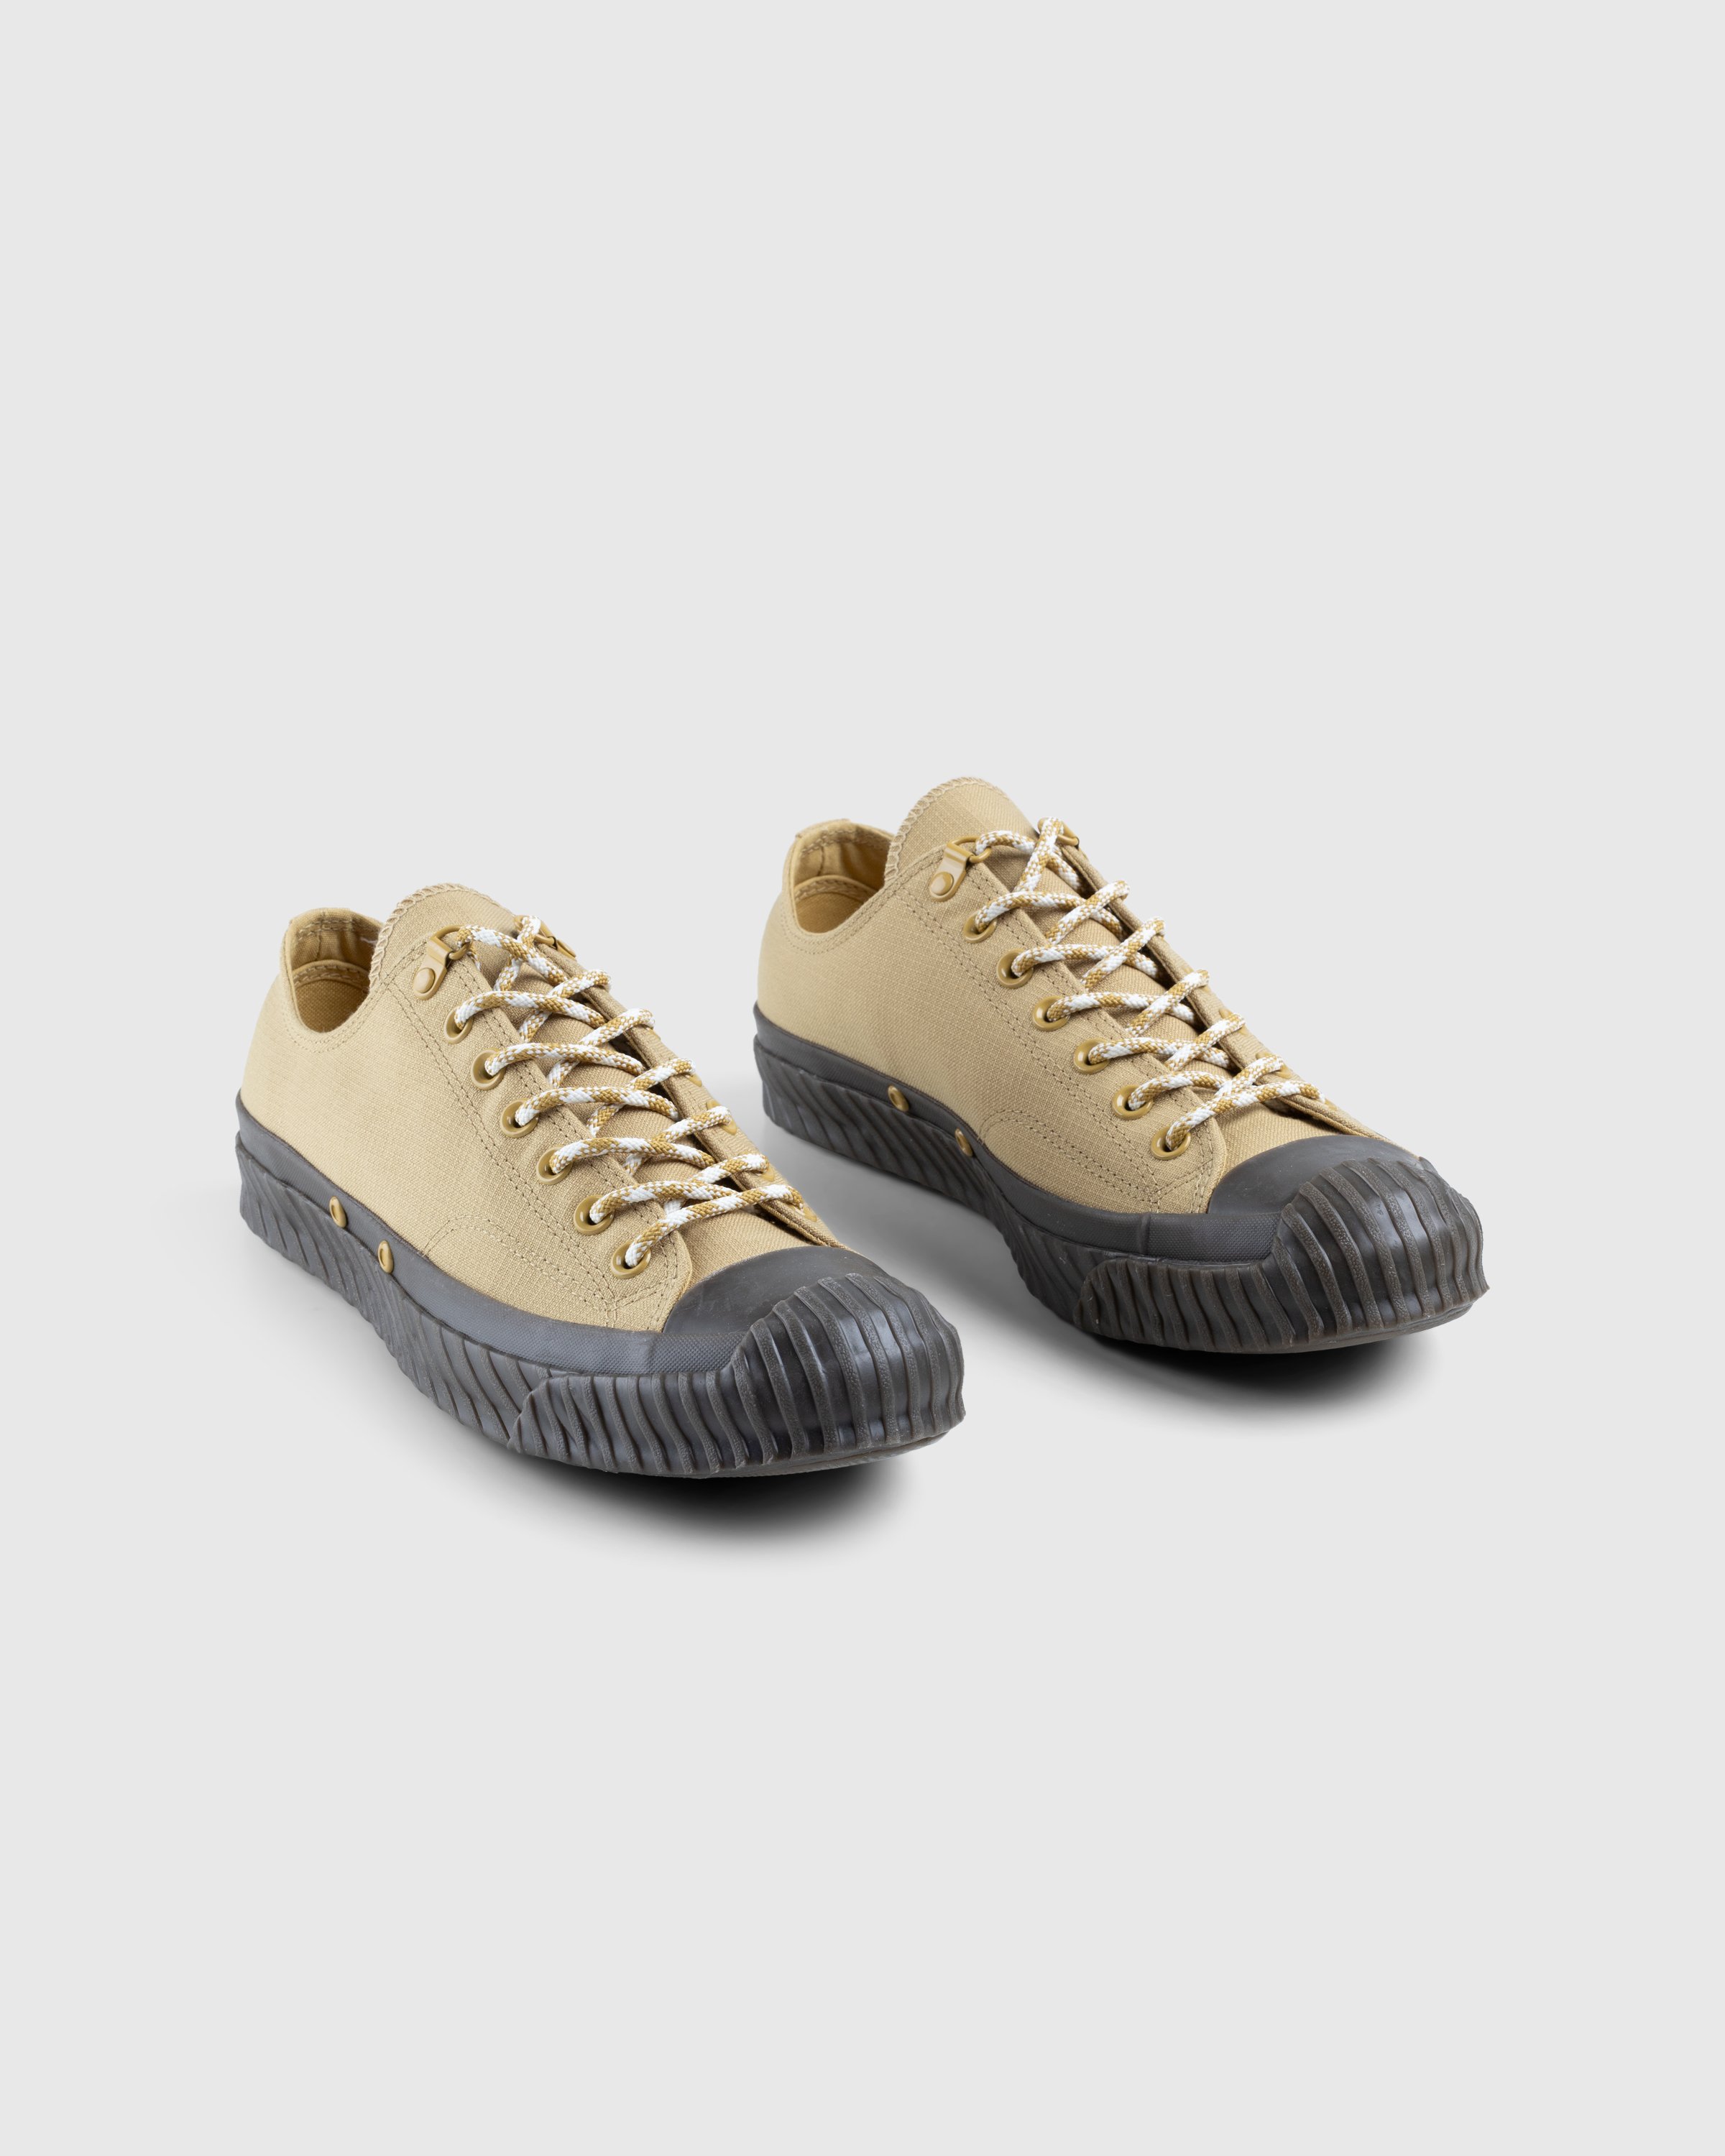 Converse - CHUCK 70 BOSEY OX DUNESCAPE/DUNESCAPE - Footwear - Multi - Image 3